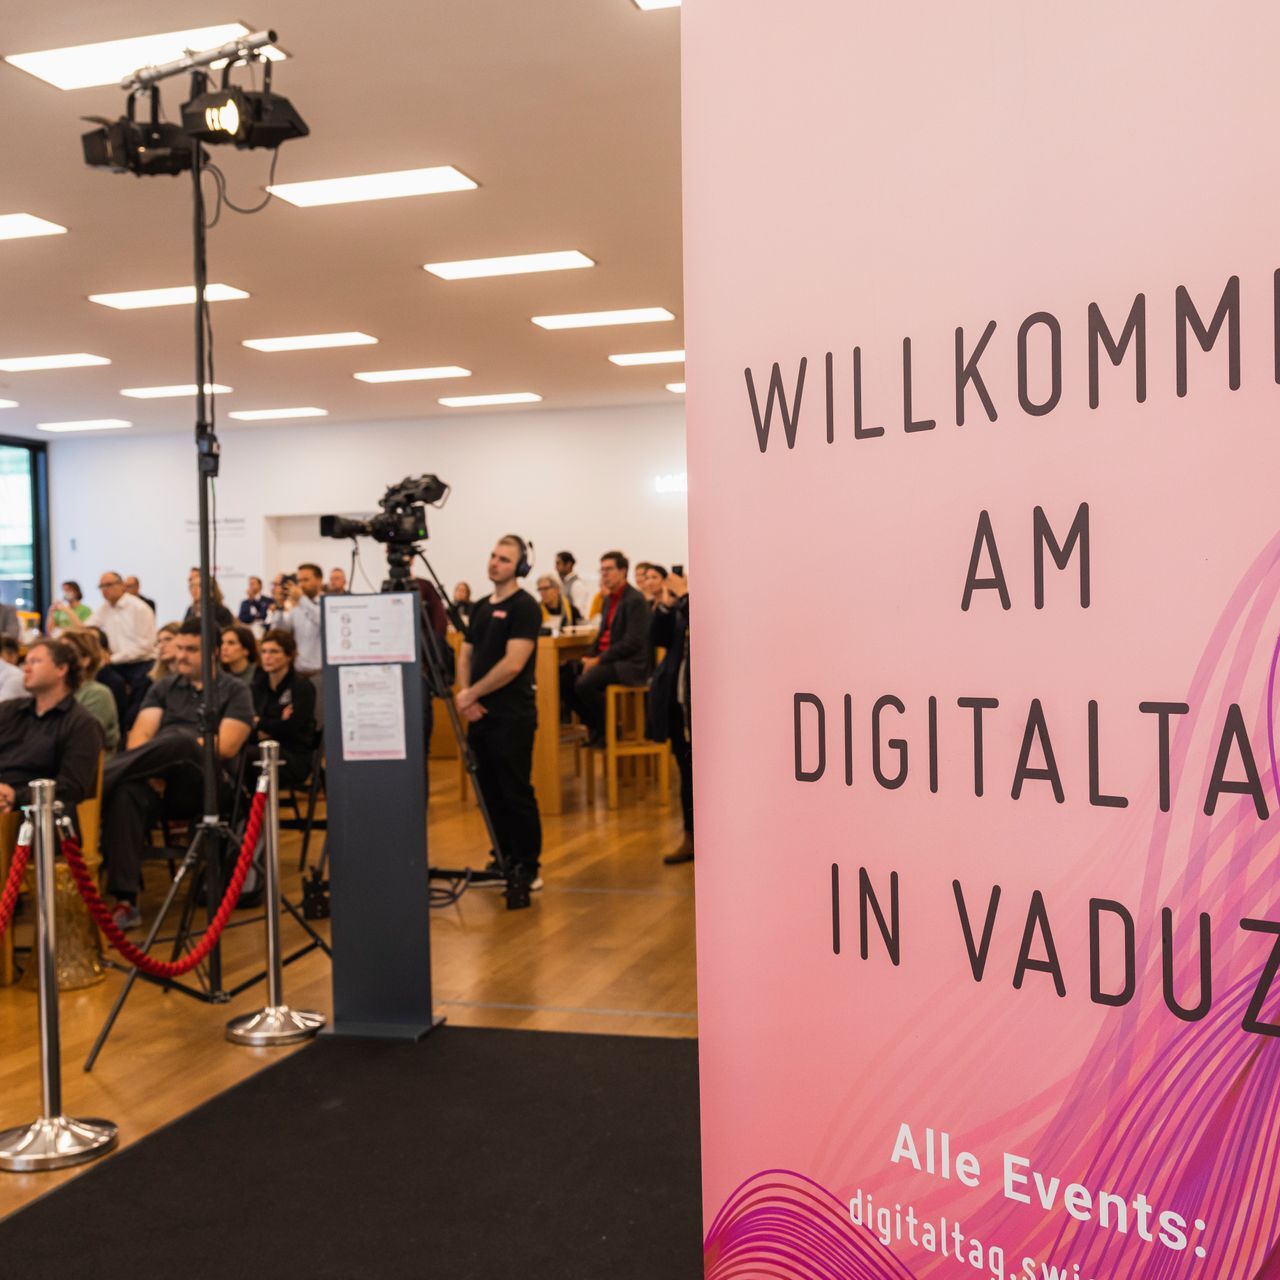 "Digitaltag Vaduz", som välkomnades av Konstmuseum i Liechtensteins huvudstad lördagen den 6 november 2021, väckte entusiasm hos allmänheten och talare i analogi med "Digital Day Switzerland" följande dag 10